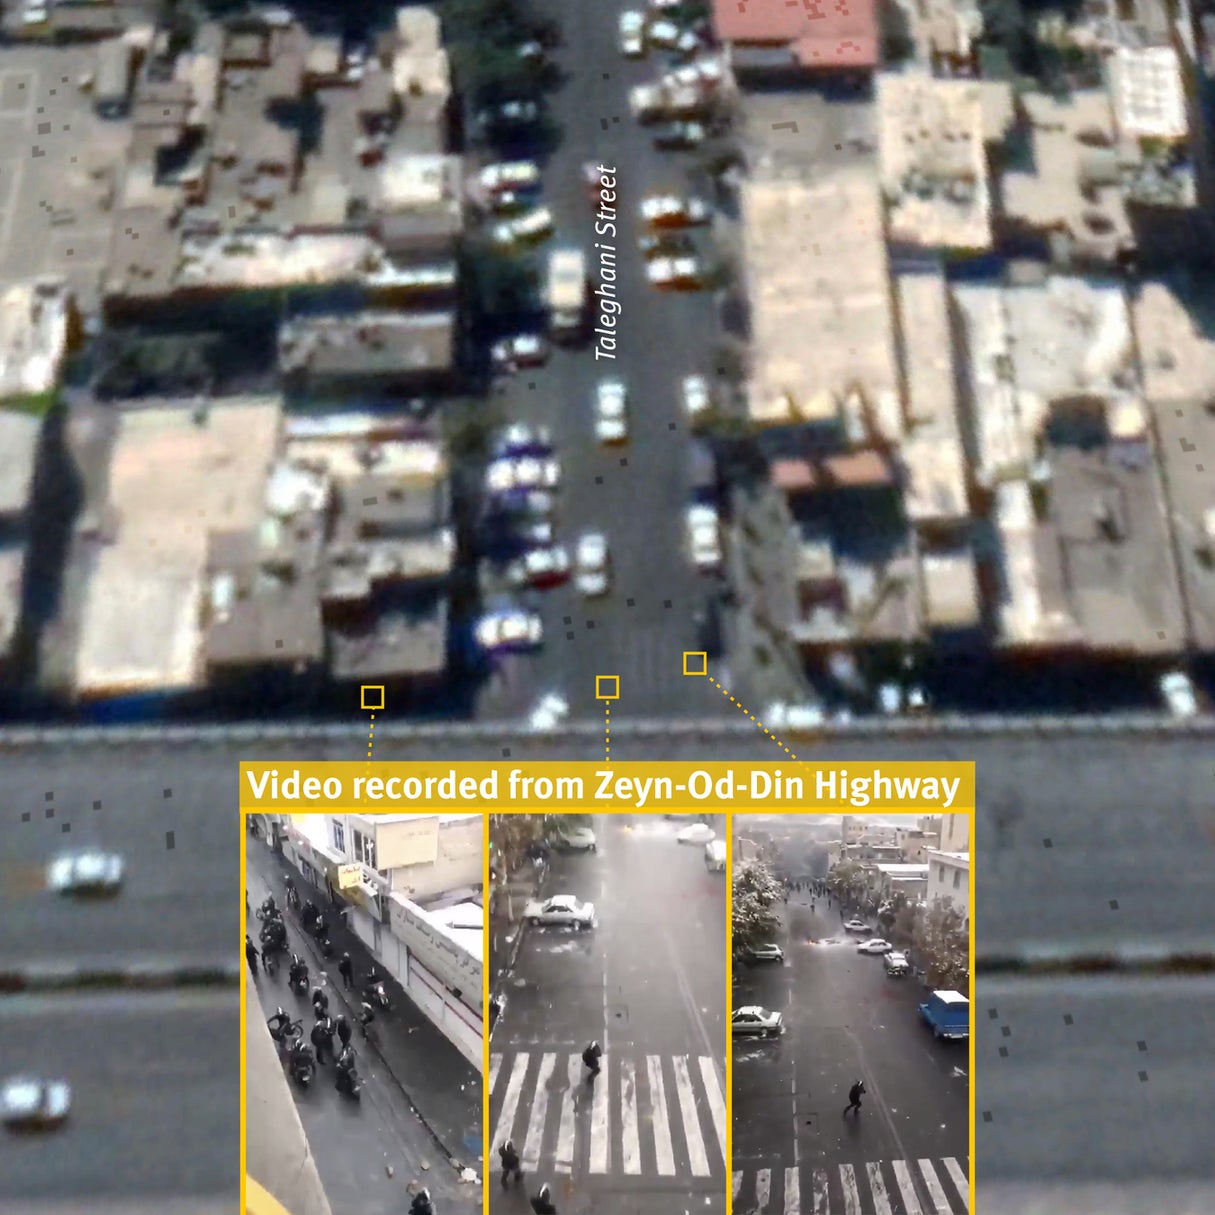 تصویر ماهواره‌ای خیابان طالقانی تهران گرفته شده در ۲۶ سپتامبر ۲۰۱۹ و لحظاتی از یک ویدیوی ضبط‌شده در این موقعیت که در ۱۷ نوامبر در شبکه‌های اجتماعی منتشر شد. ویدیو نیروهای امنیتی جمع‌شده در یک خیابان فرعی، و ورود یکی از آنها به خیابان طالقانی 